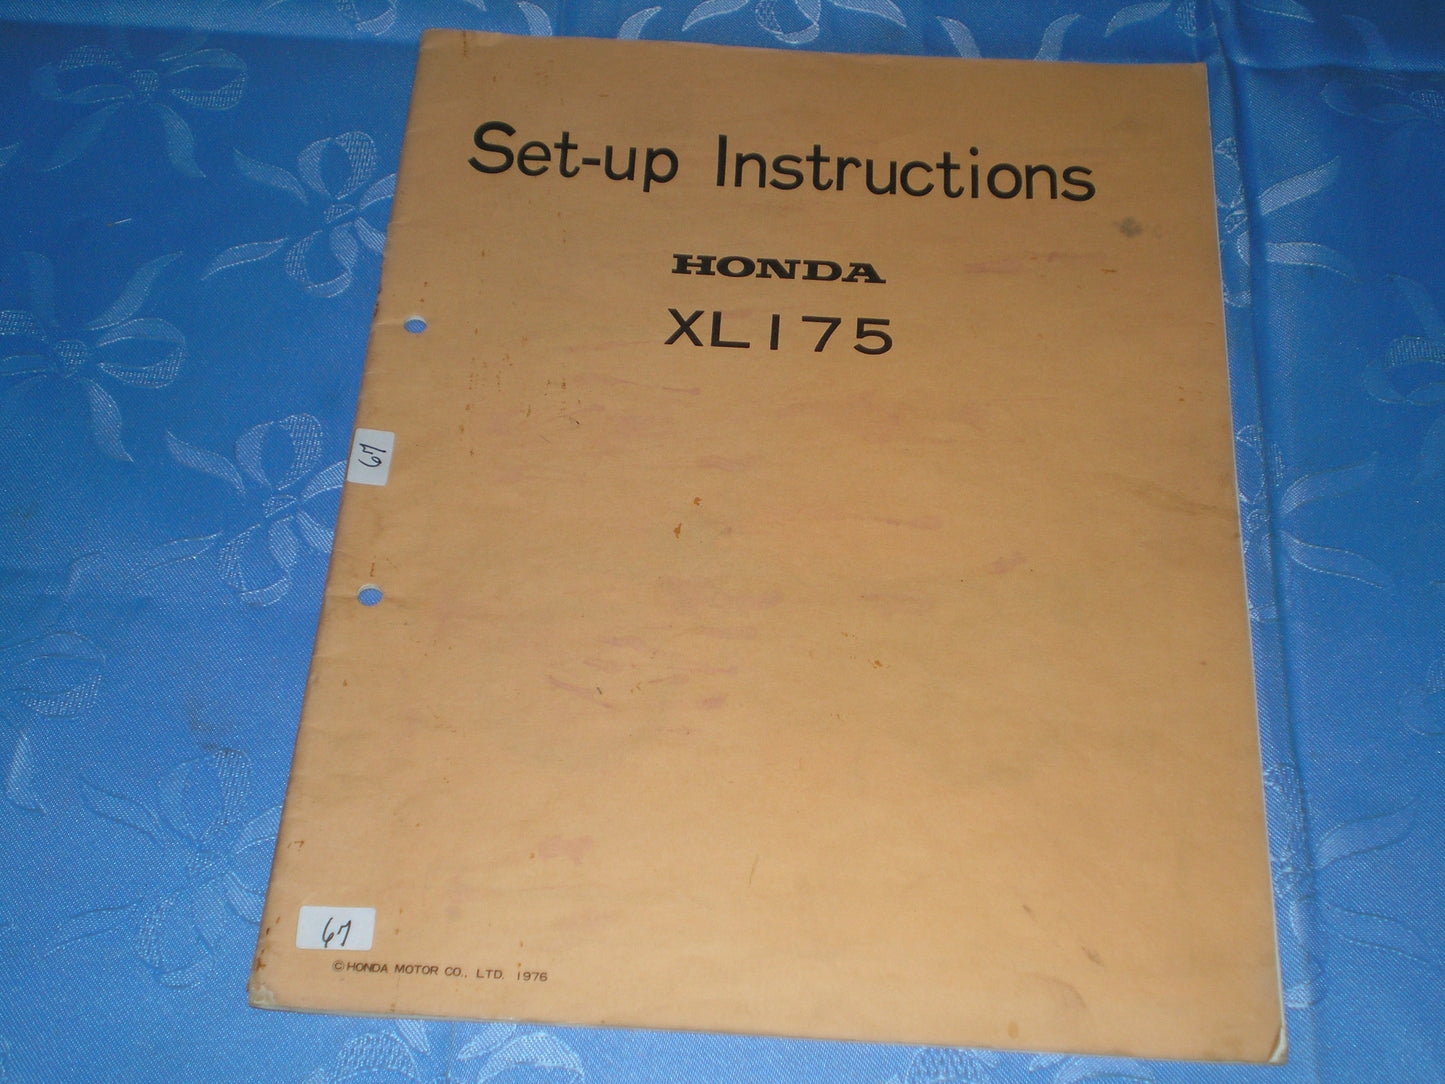 HONDA XL175 1976  Set-up Instructions Manual  6236203  K4 A 3507610  #67